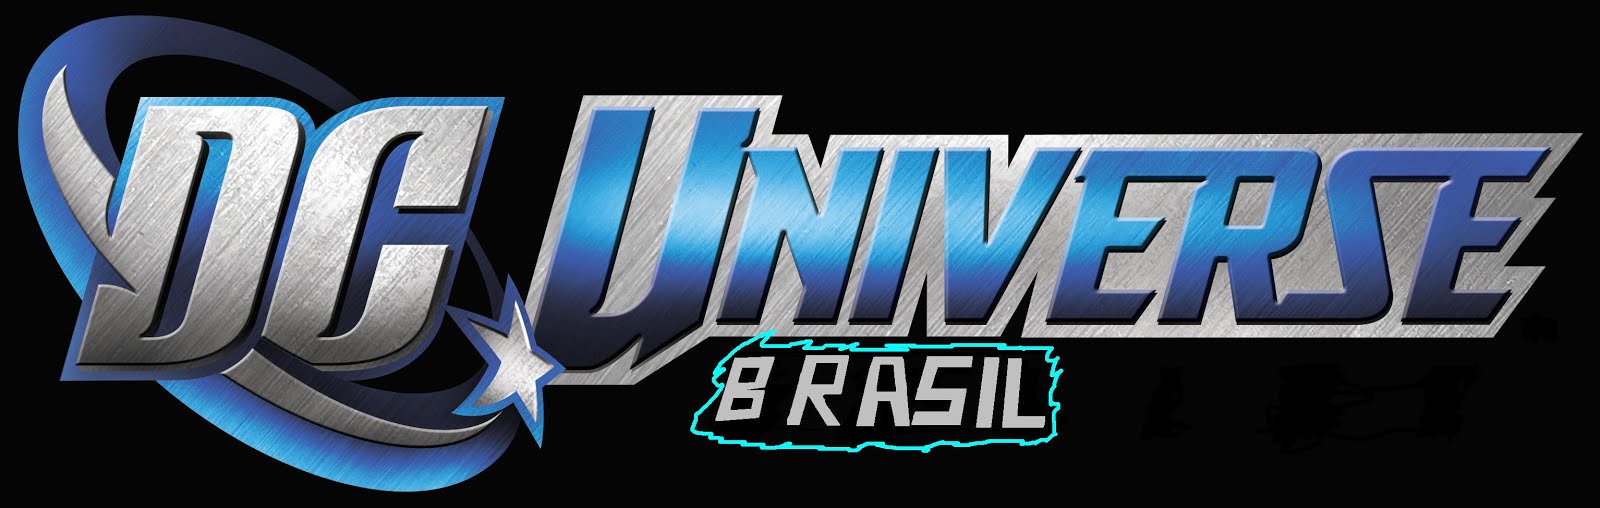 DC Universe Brasil